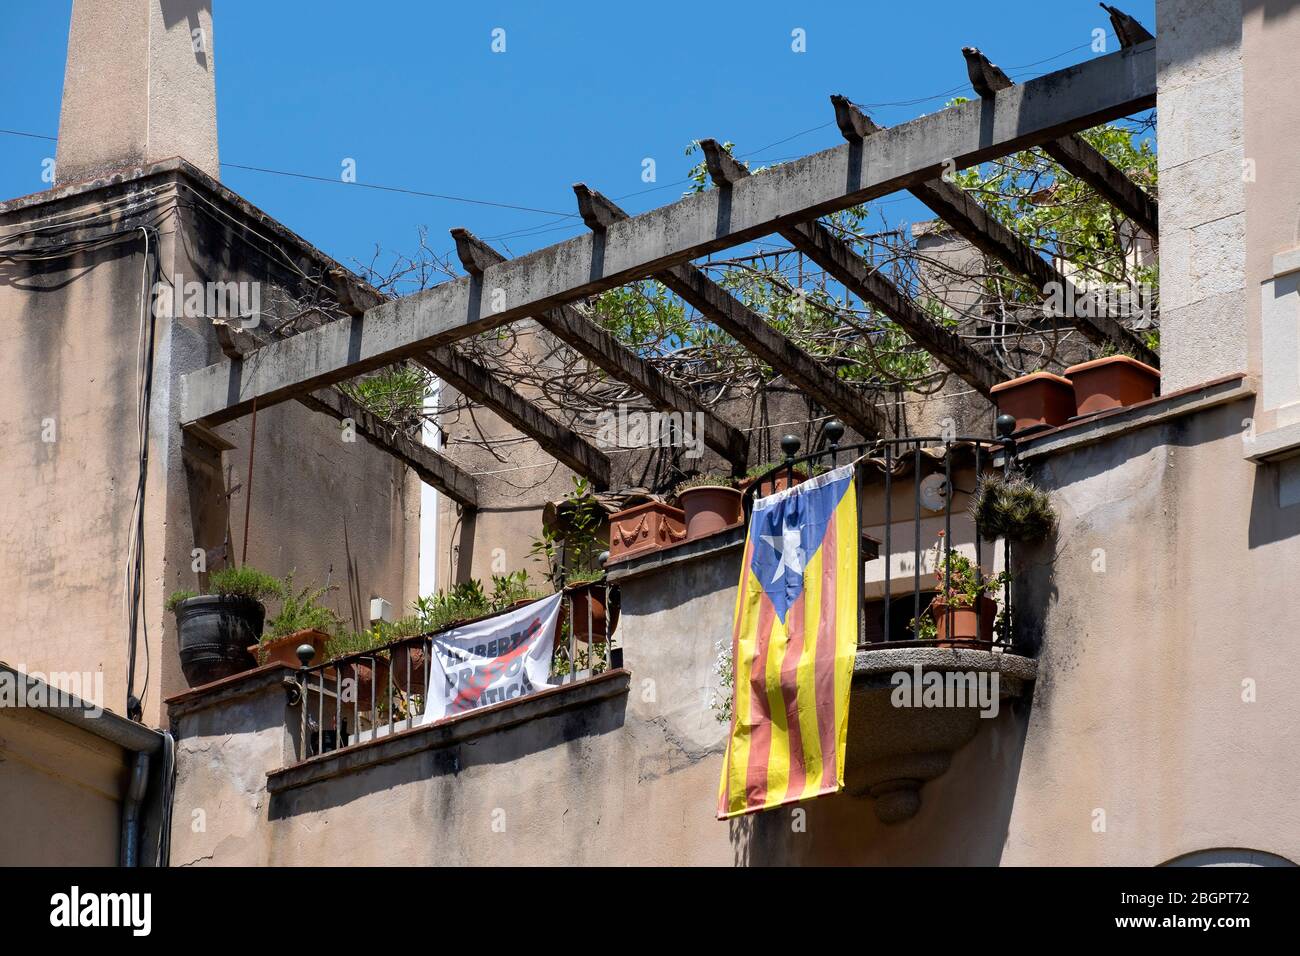 Bandiera catalana su un balcone per simboleggiare la lotta per l'indipendenza della Catalogna dalla Spagna Foto Stock